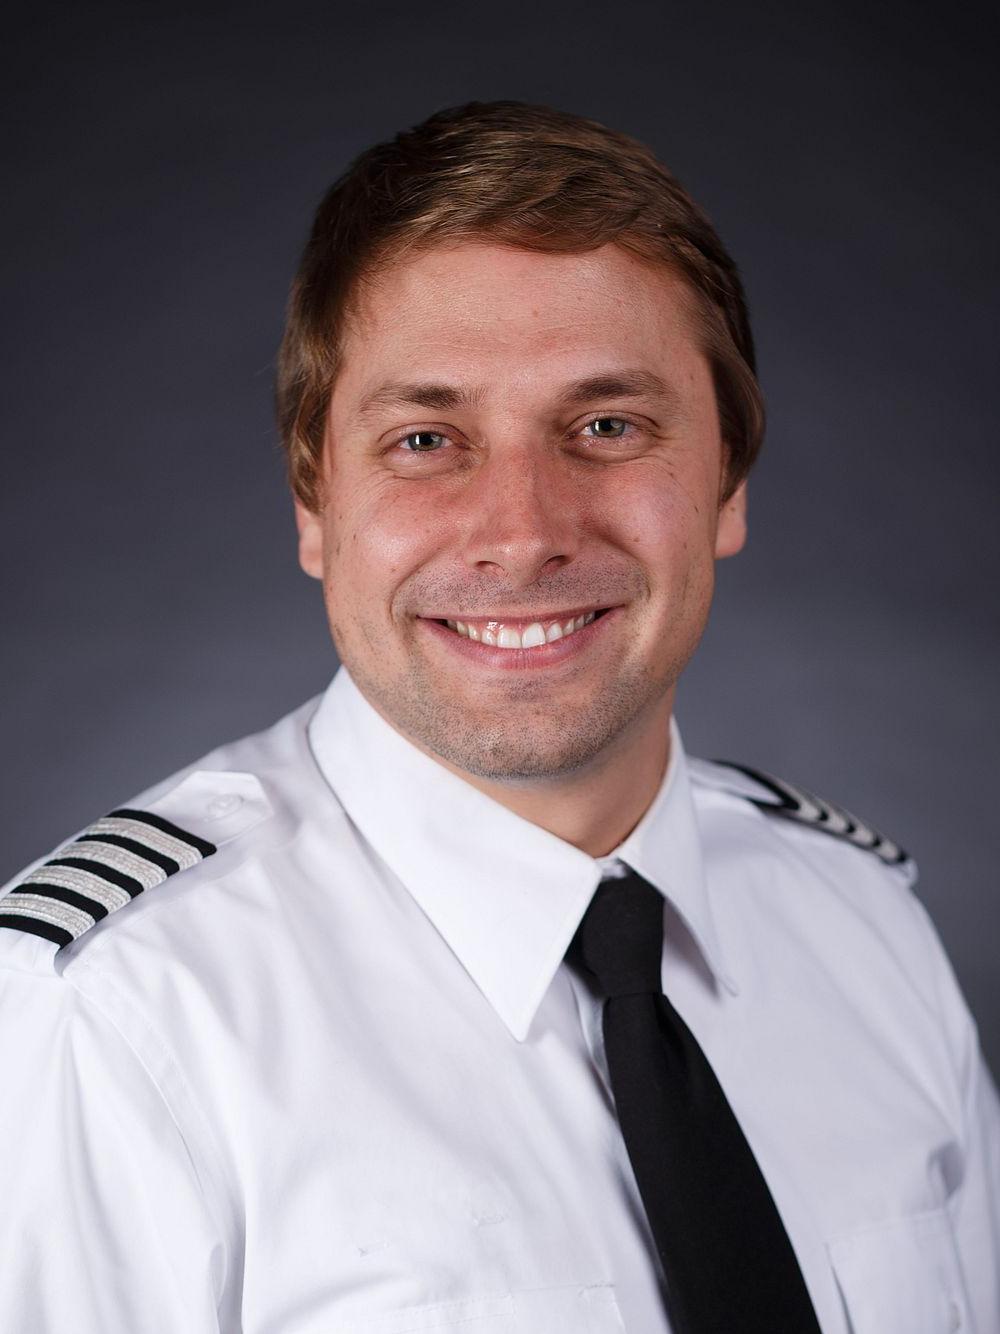 菲利普·格兰德兰格穿着飞行员制服的职业肖像. 